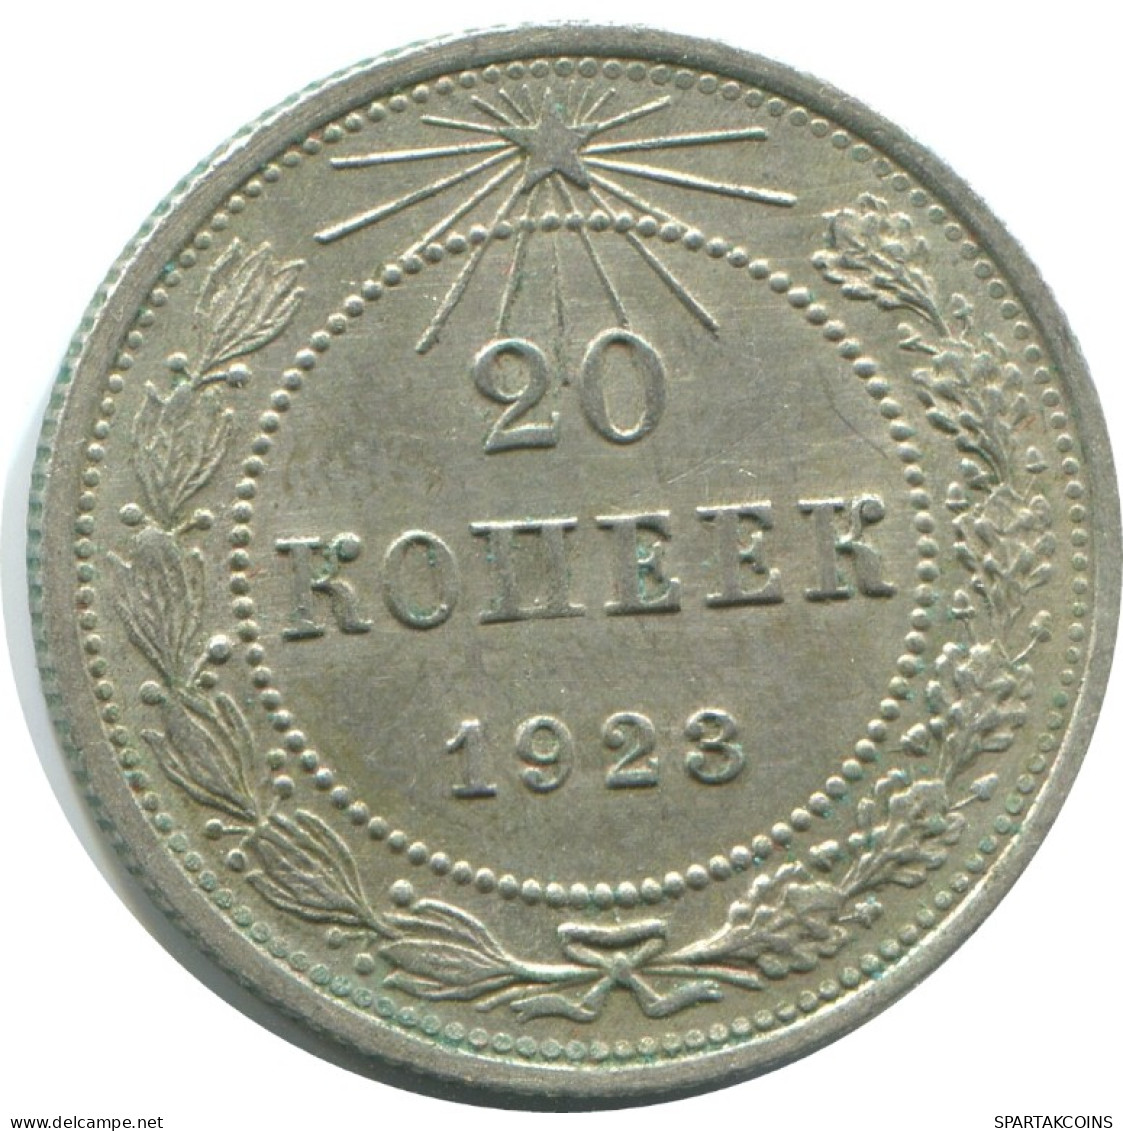 20 KOPEKS 1923 RUSIA RUSSIA RSFSR PLATA Moneda HIGH GRADE #AF579.4.E.A - Russland